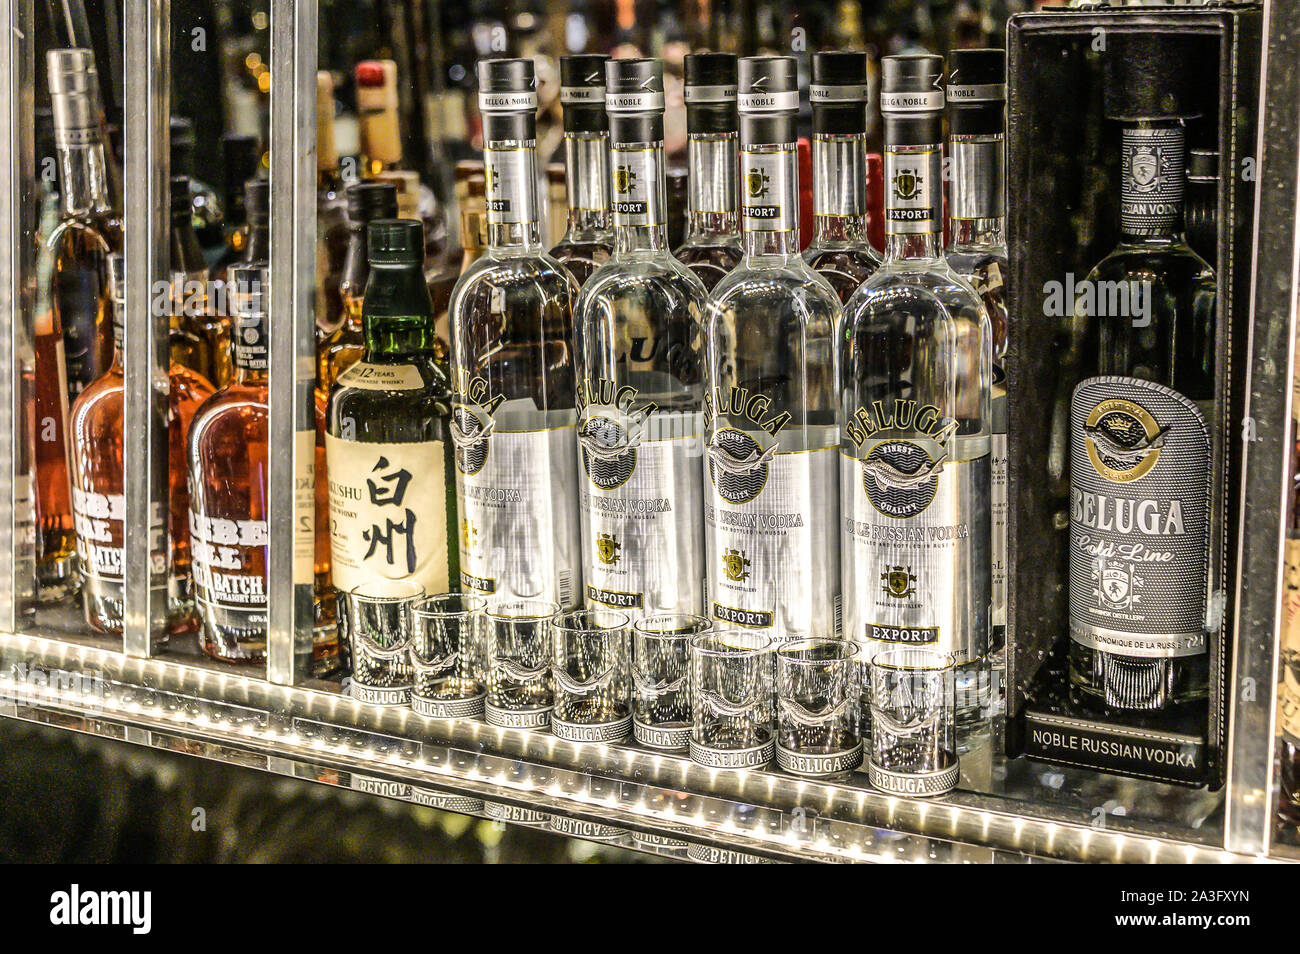 24.02.2019 Peking China - Wand mit Bitterstoffe und Alkohole Whiskey Bar Flaschen ambient tlight Hintergrund verschwommen. Stockfoto